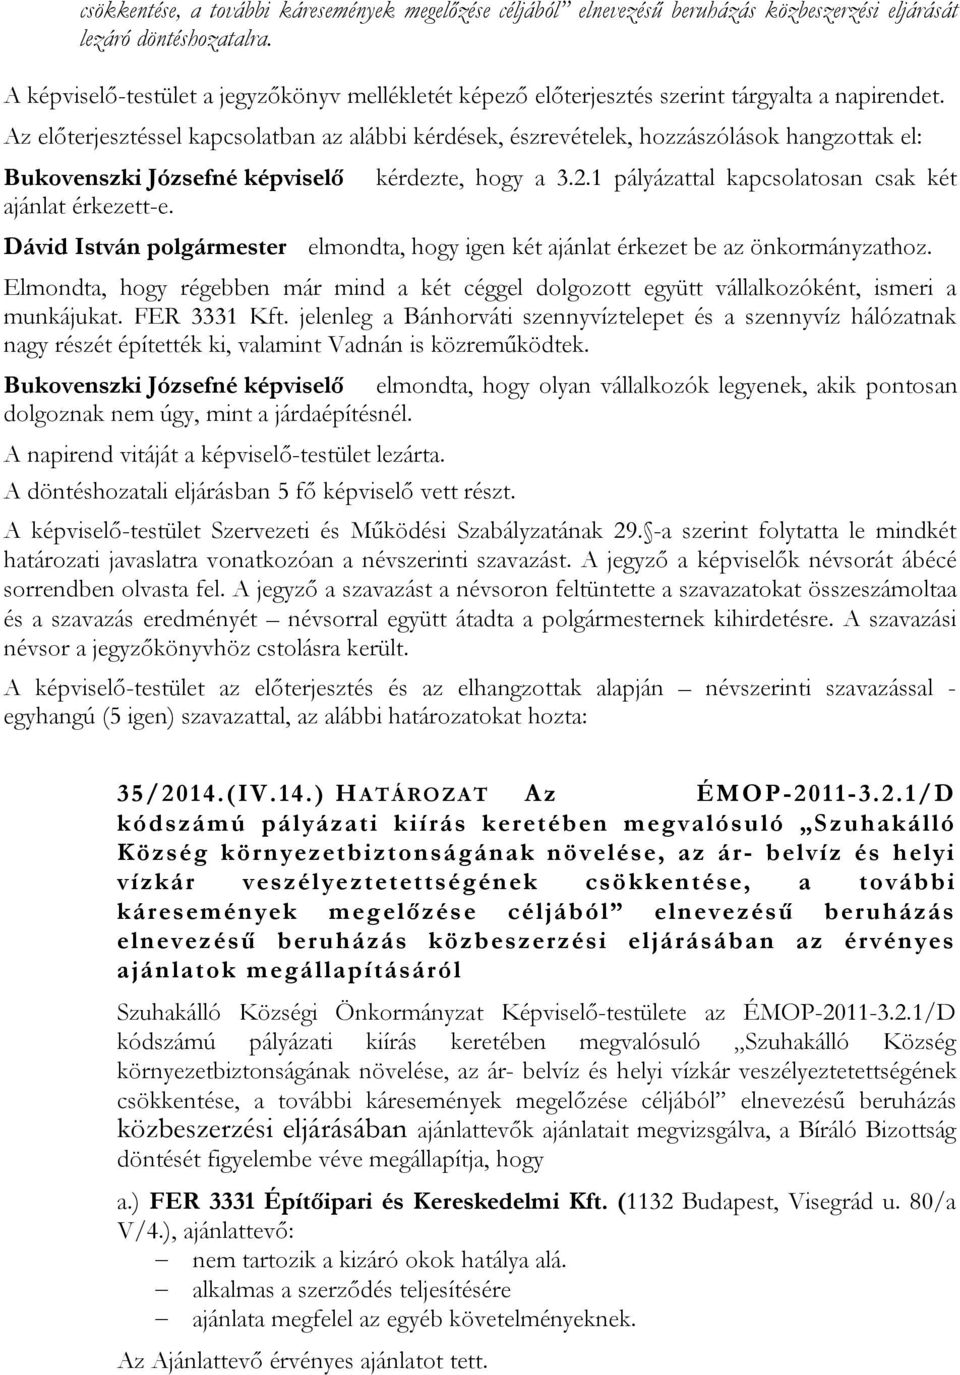 Az előterjesztéssel kapcsolatban az alábbi kérdések, észrevételek, hozzászólások hangzottak el: Bukovenszki Józsefné képviselő ajánlat érkezett-e. kérdezte, hogy a 3.2.